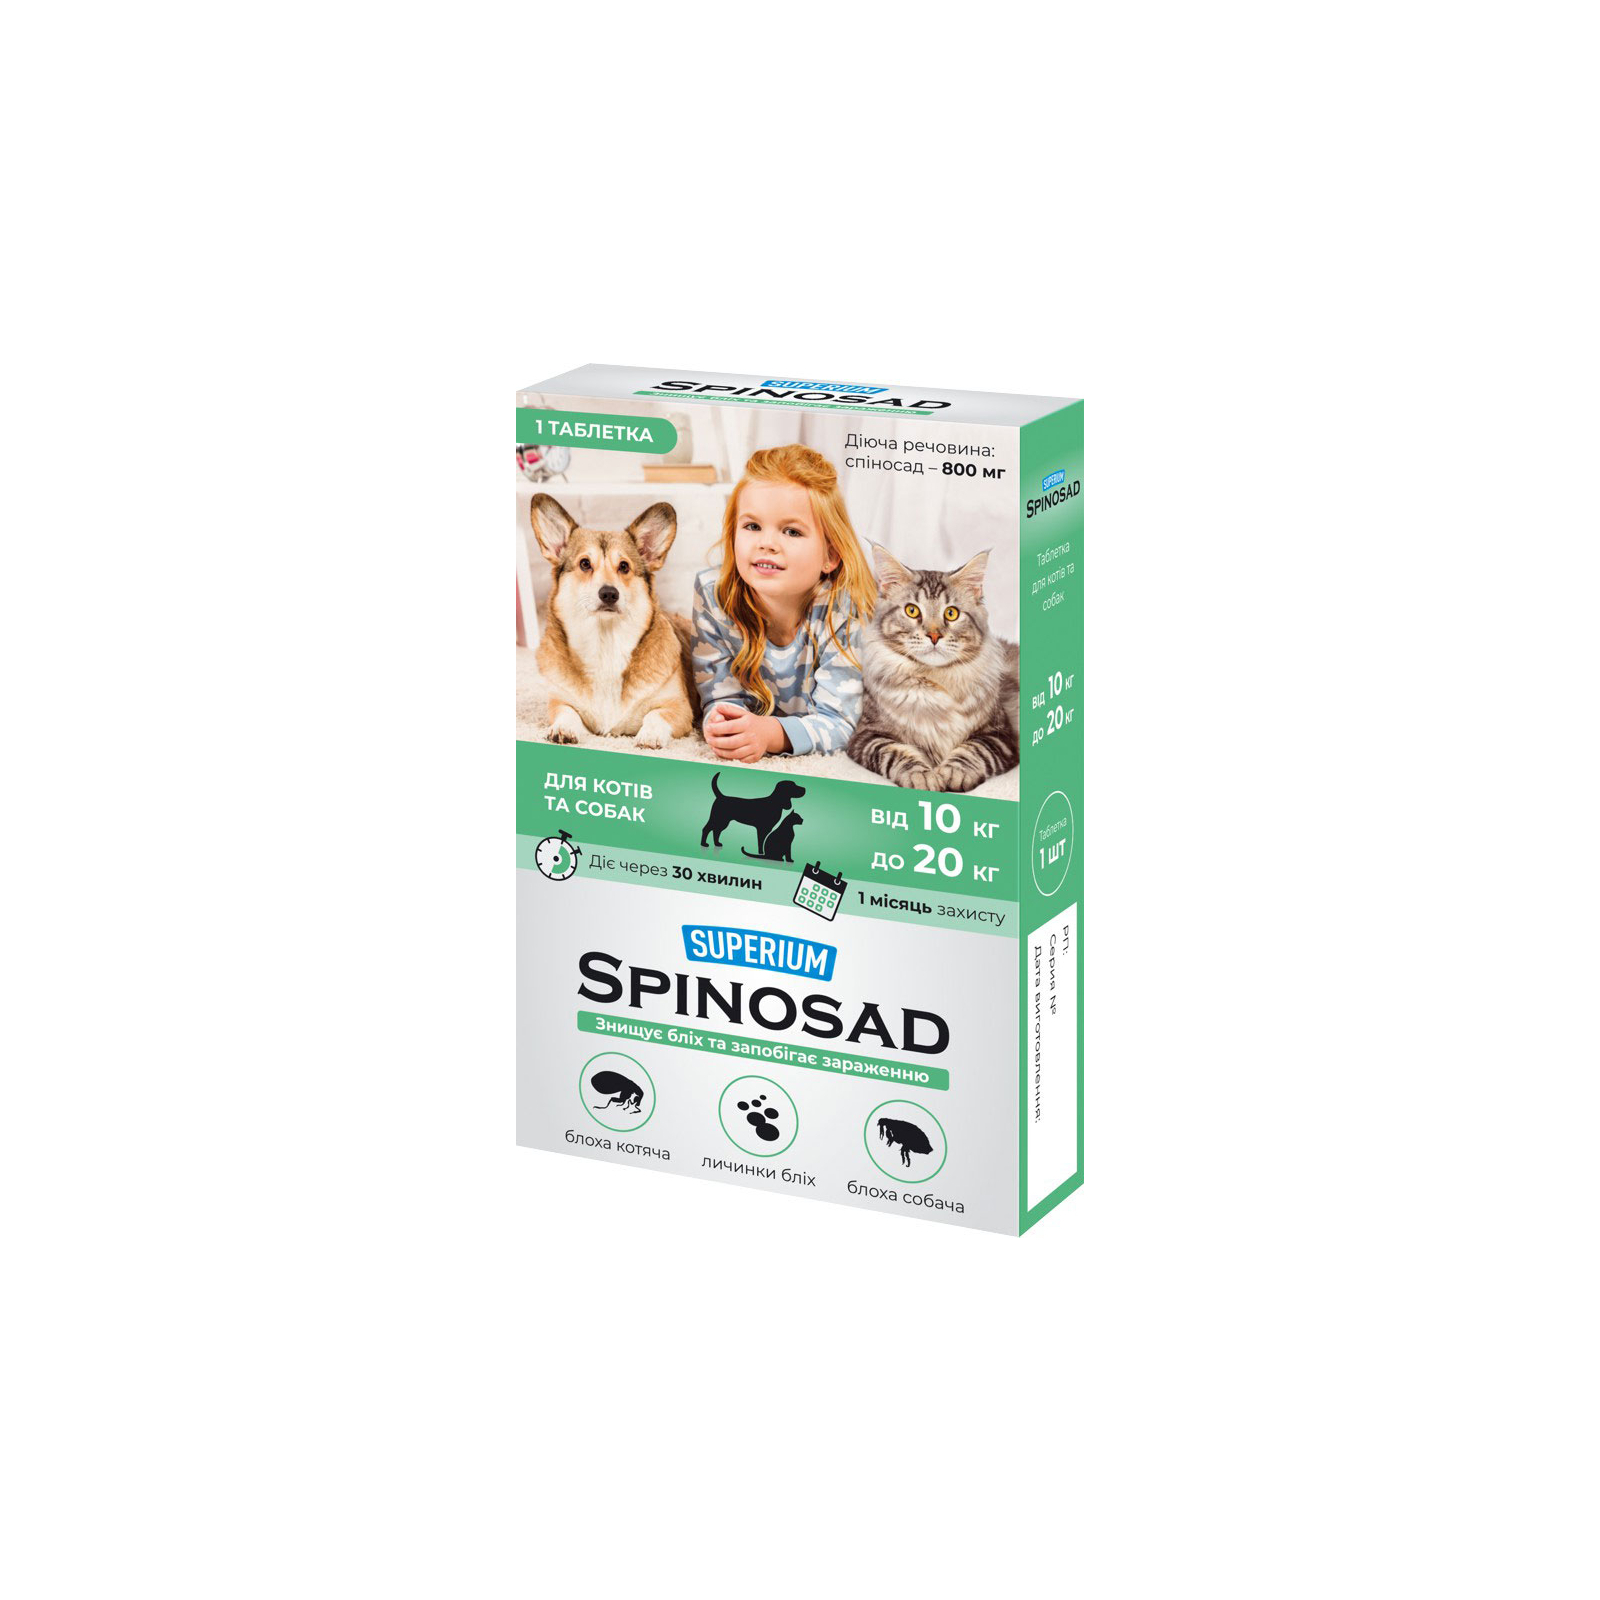 Таблетки для животных SUPERIUM Spinosad от блох для кошек и собак весом 10-20 кг (4823089337777)